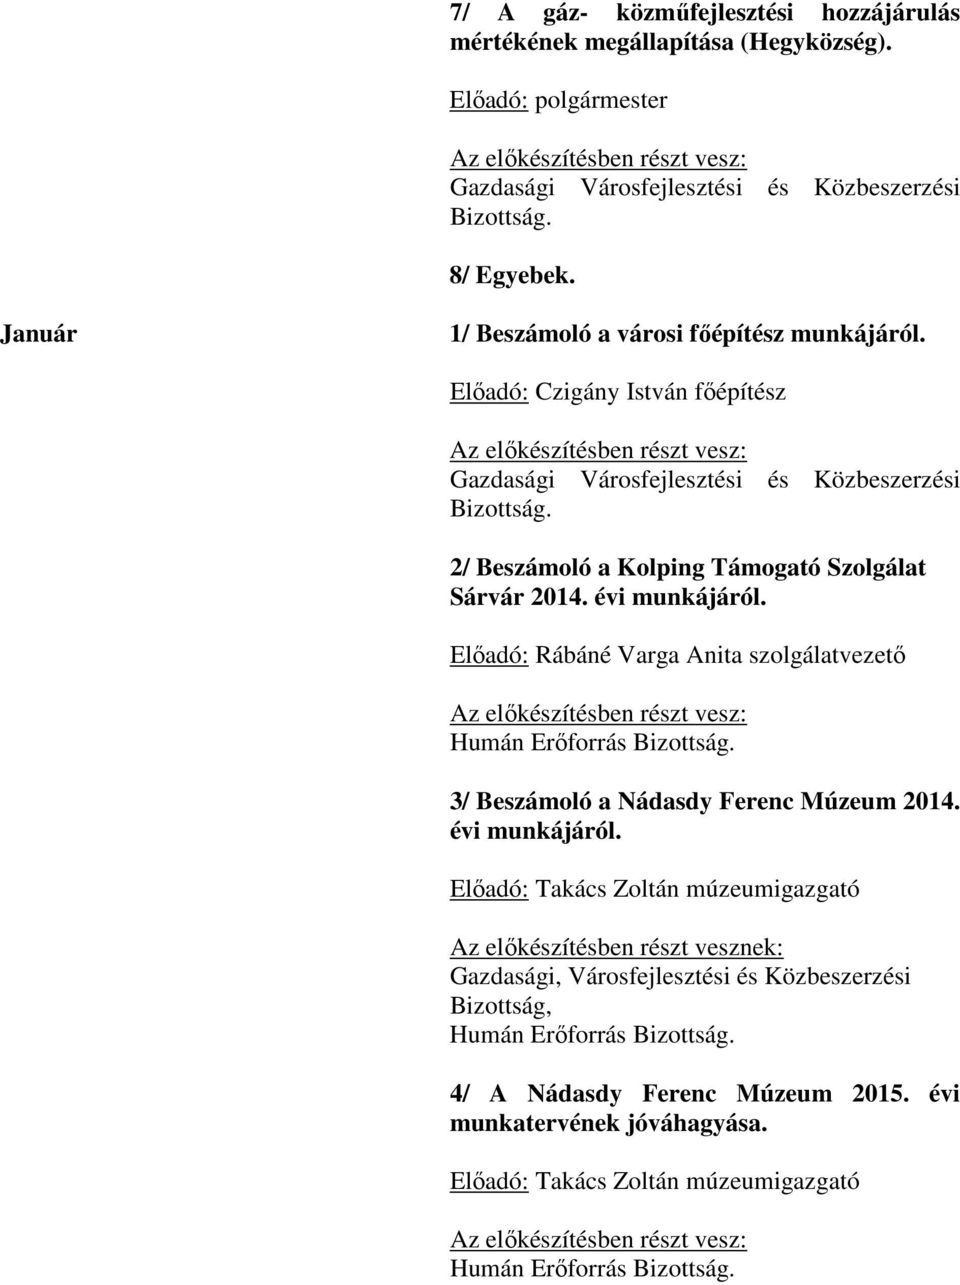 Előadó: Rábáné Varga Anita szolgálatvezető Humán Erőforrás Bizottság. 3/ Beszámoló a Nádasdy Ferenc Múzeum 2014. évi munkájáról.